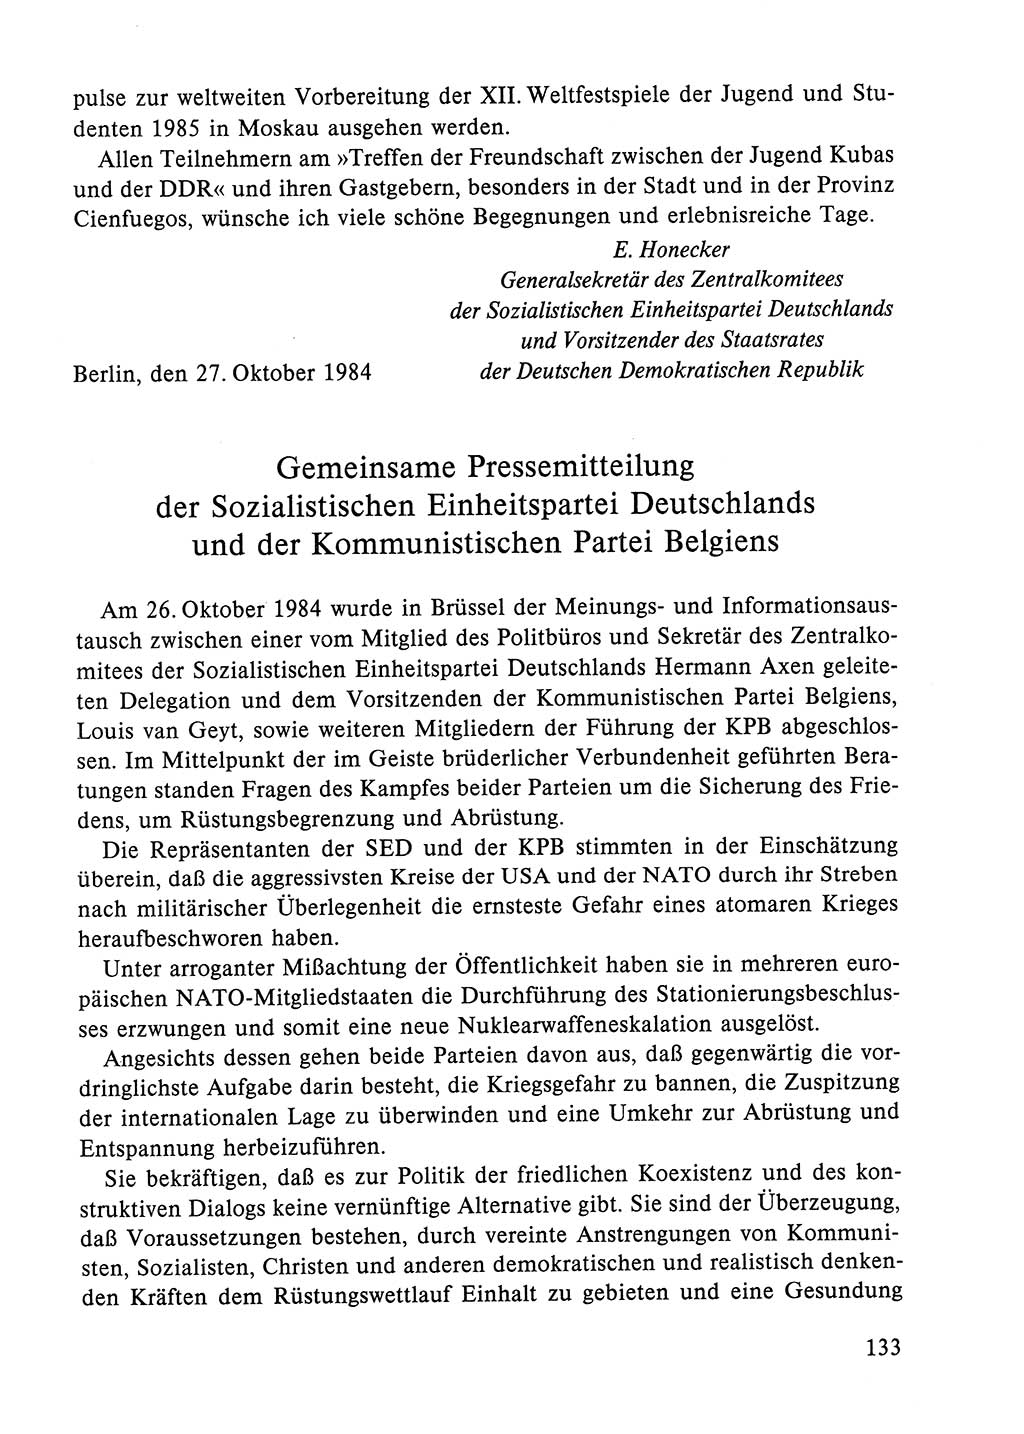 Dokumente der Sozialistischen Einheitspartei Deutschlands (SED) [Deutsche Demokratische Republik (DDR)] 1984-1985, Seite 294 (Dok. SED DDR 1984-1985, S. 294)